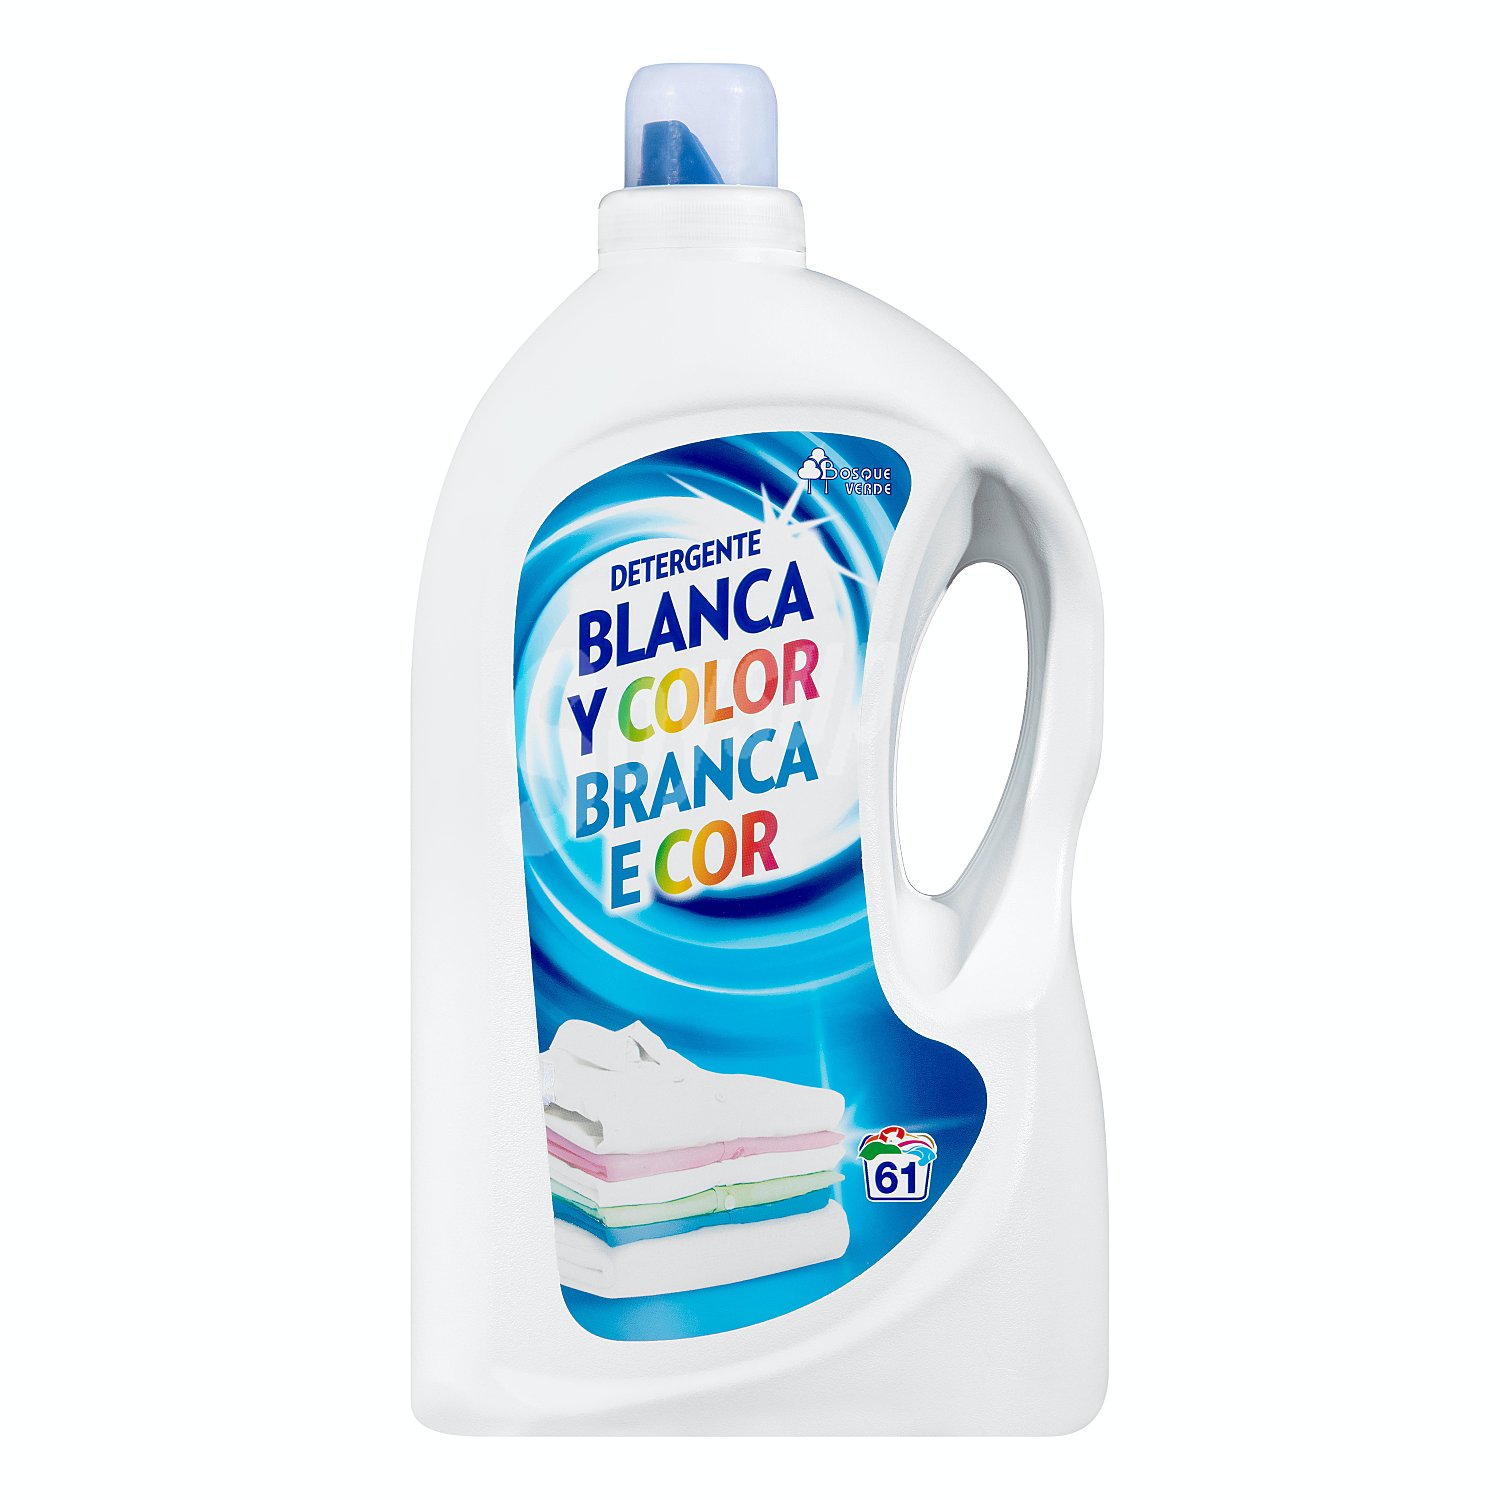 Detergente Lavadora Mercadona